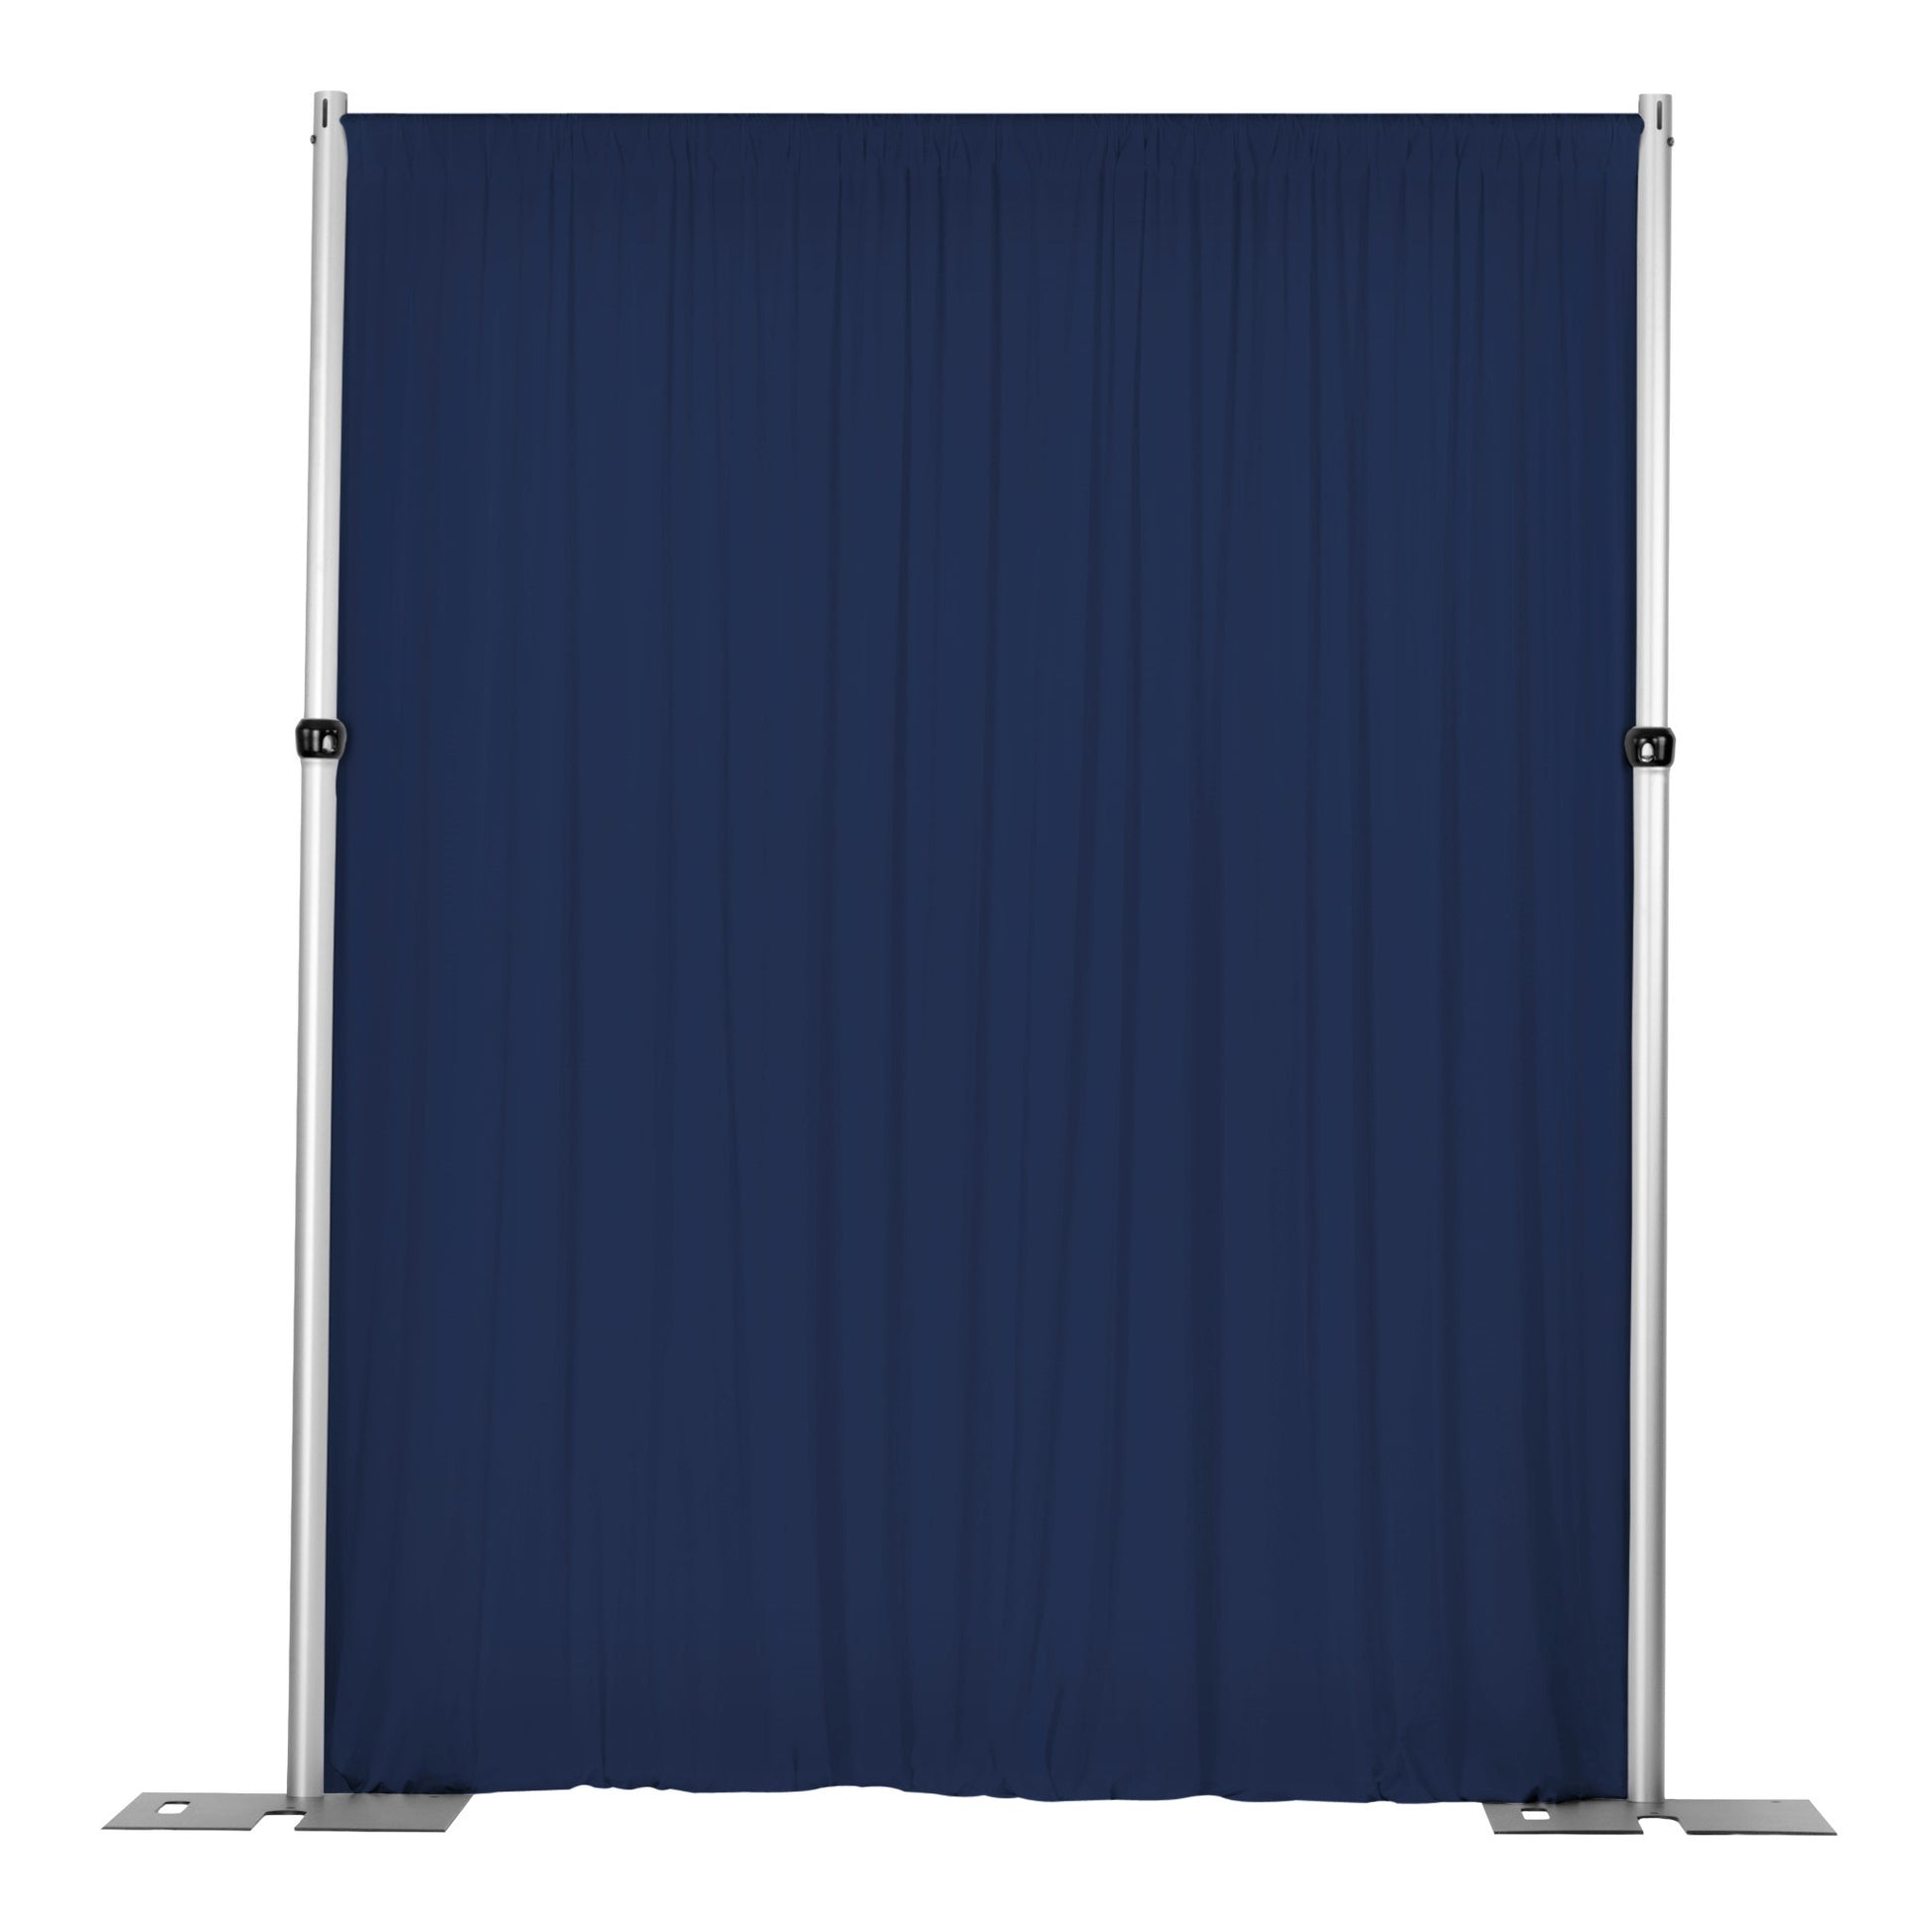 Spandex 4-way Stretch Drape Curtain 12ft H x 60" W - Navy Blue